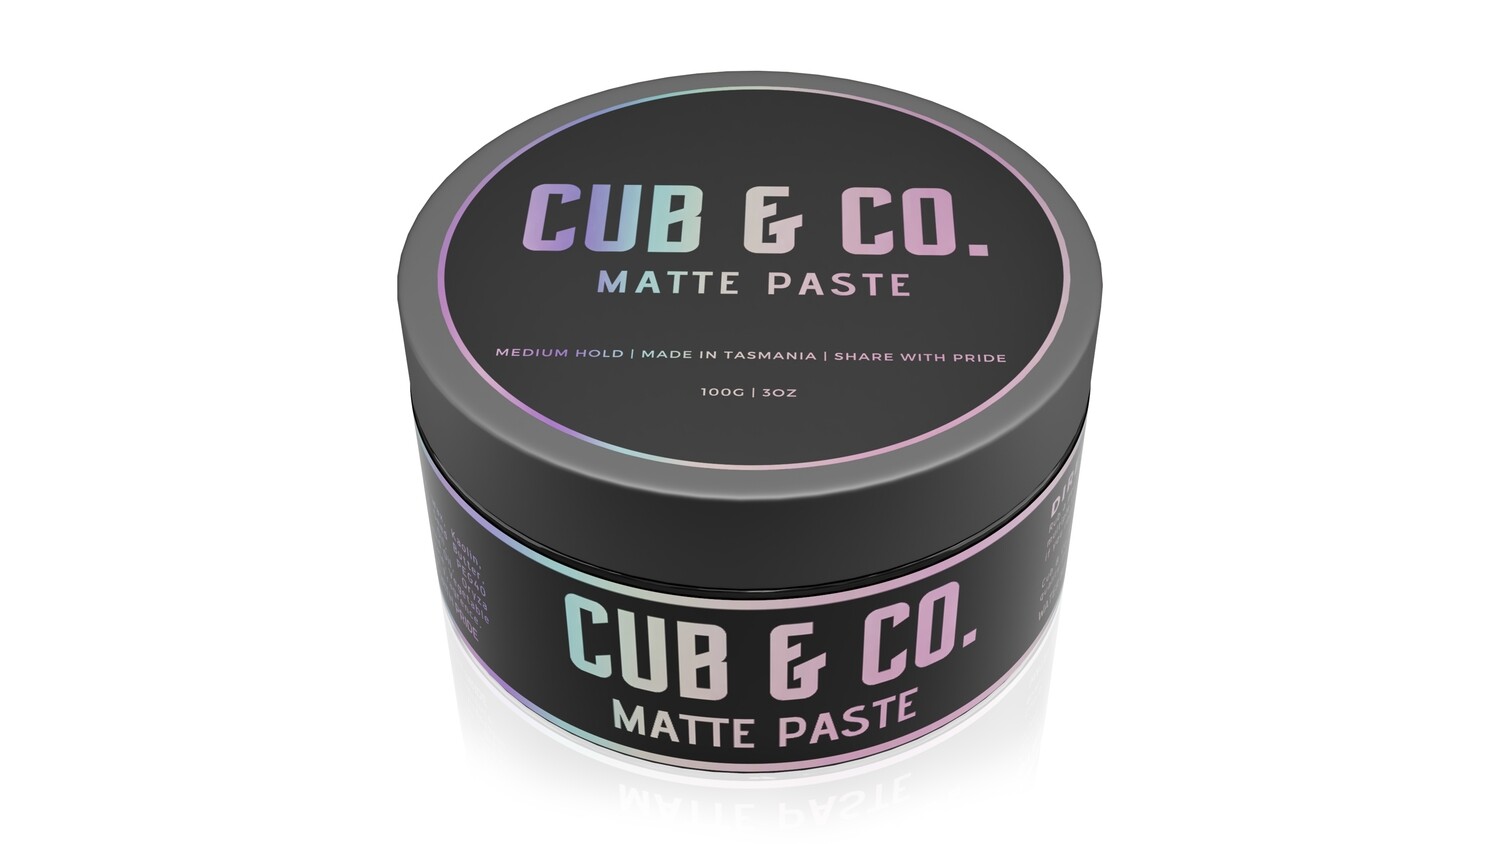 Cub & Co "Matte Paste"